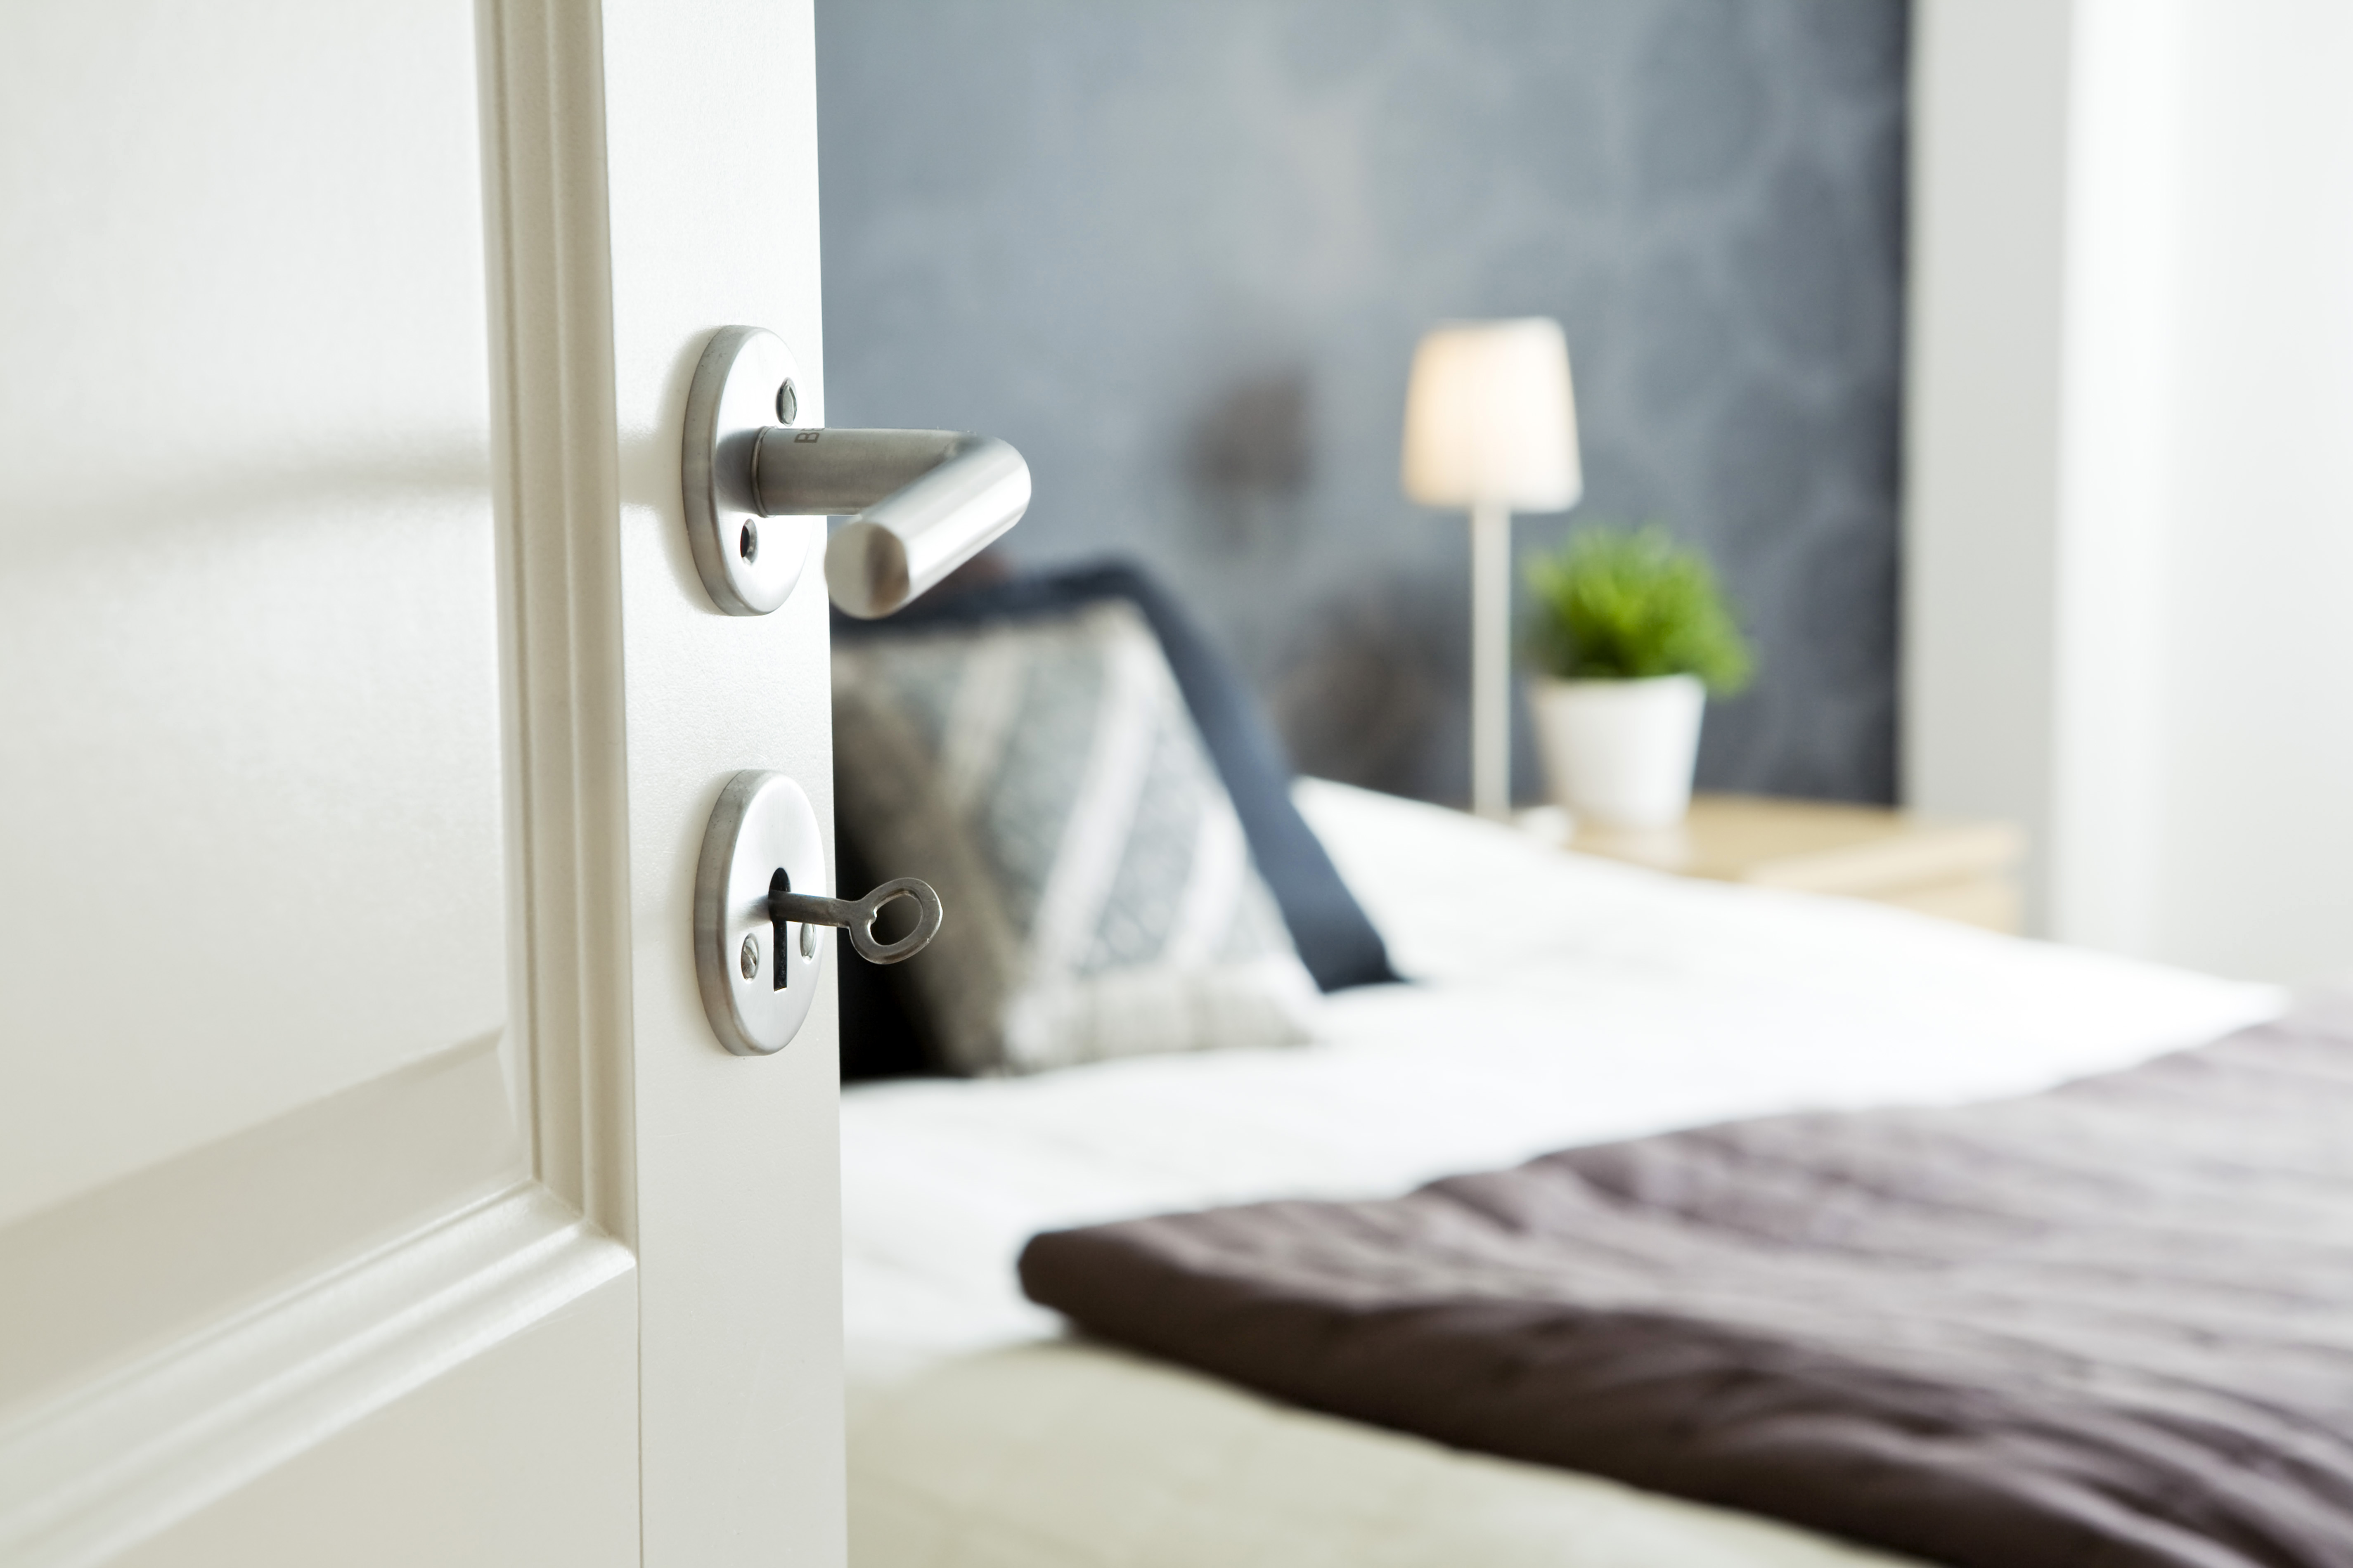 Eine offene Schlafzimmertür mit einem Schlüssel darin | Quelle: Getty Images